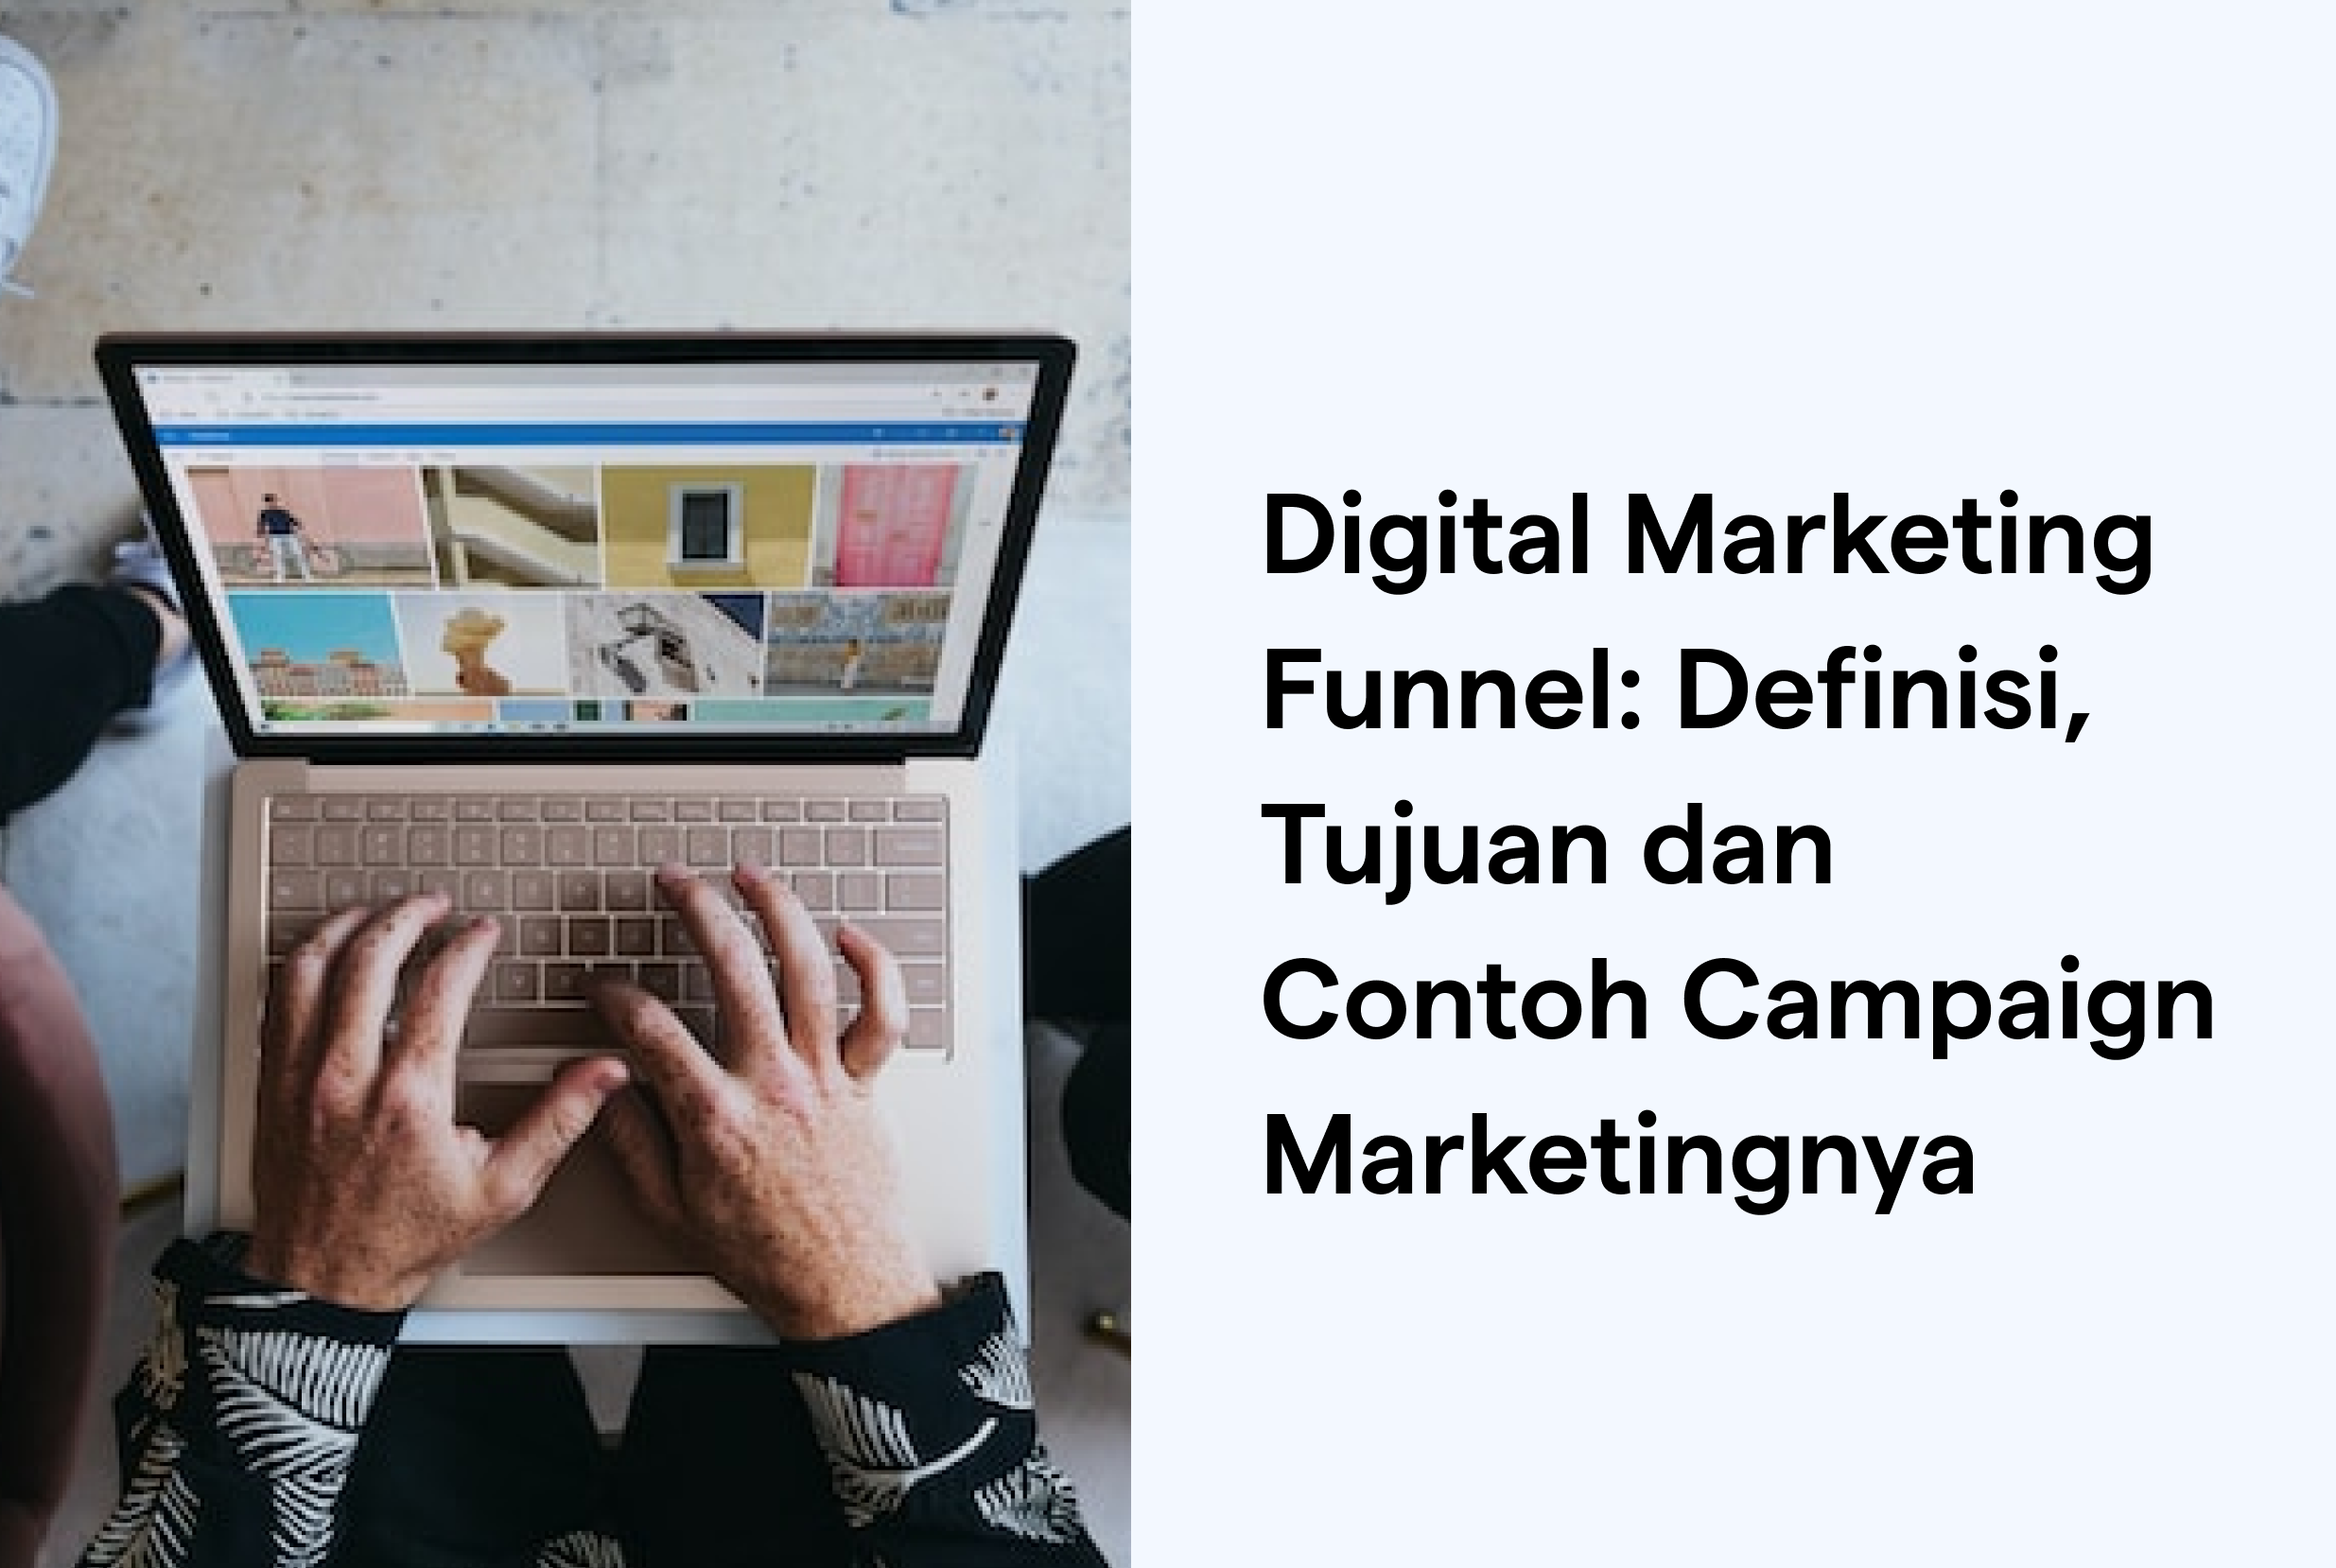 Digital Marketing Funnel: Definisi, Tujuan dan Contoh Campaign Marketingnya